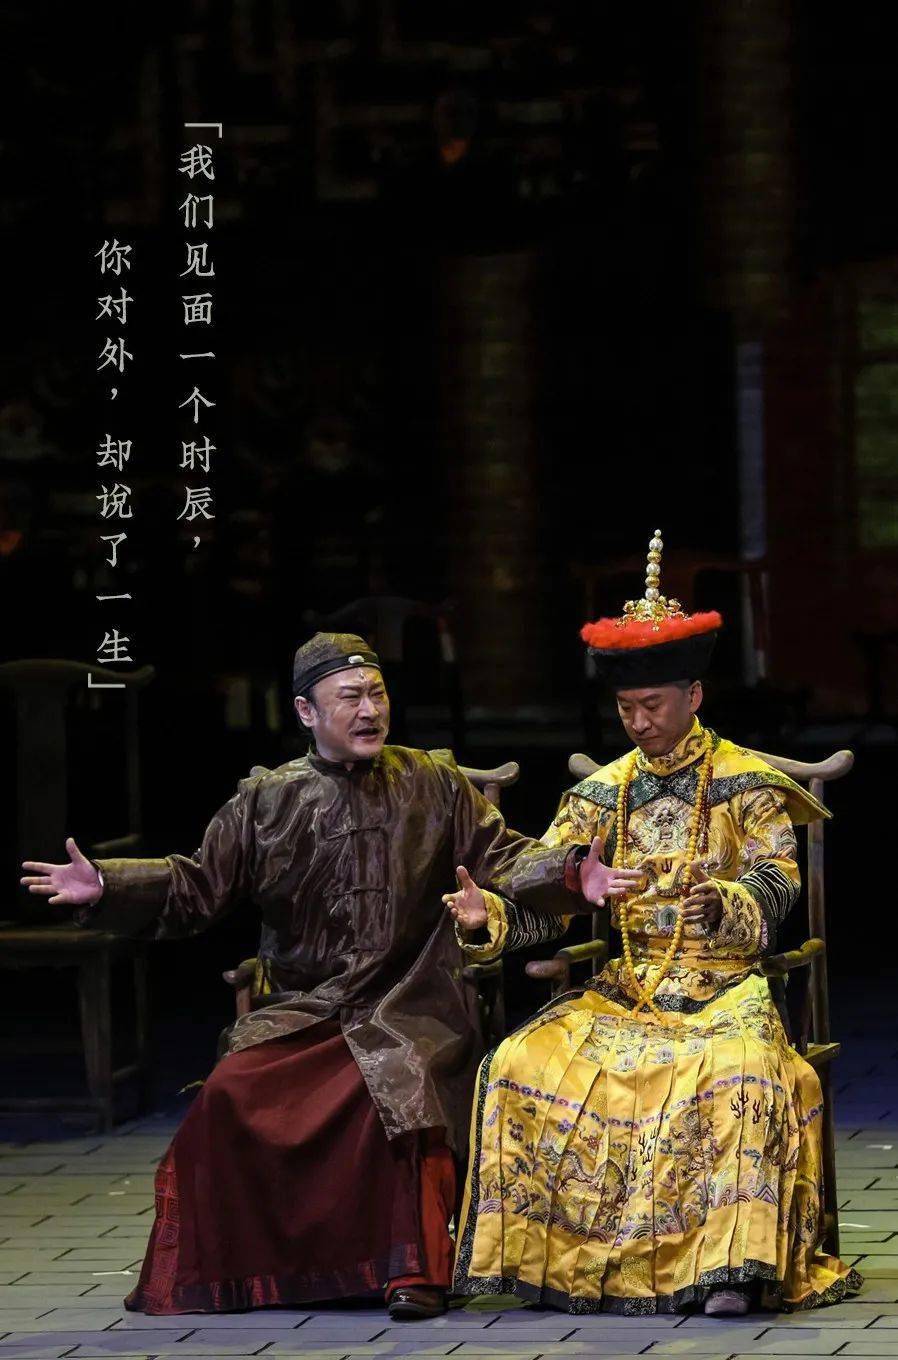 由中国国家话剧院出品,演出的话剧《北京法源寺》再度登陆国家大剧院